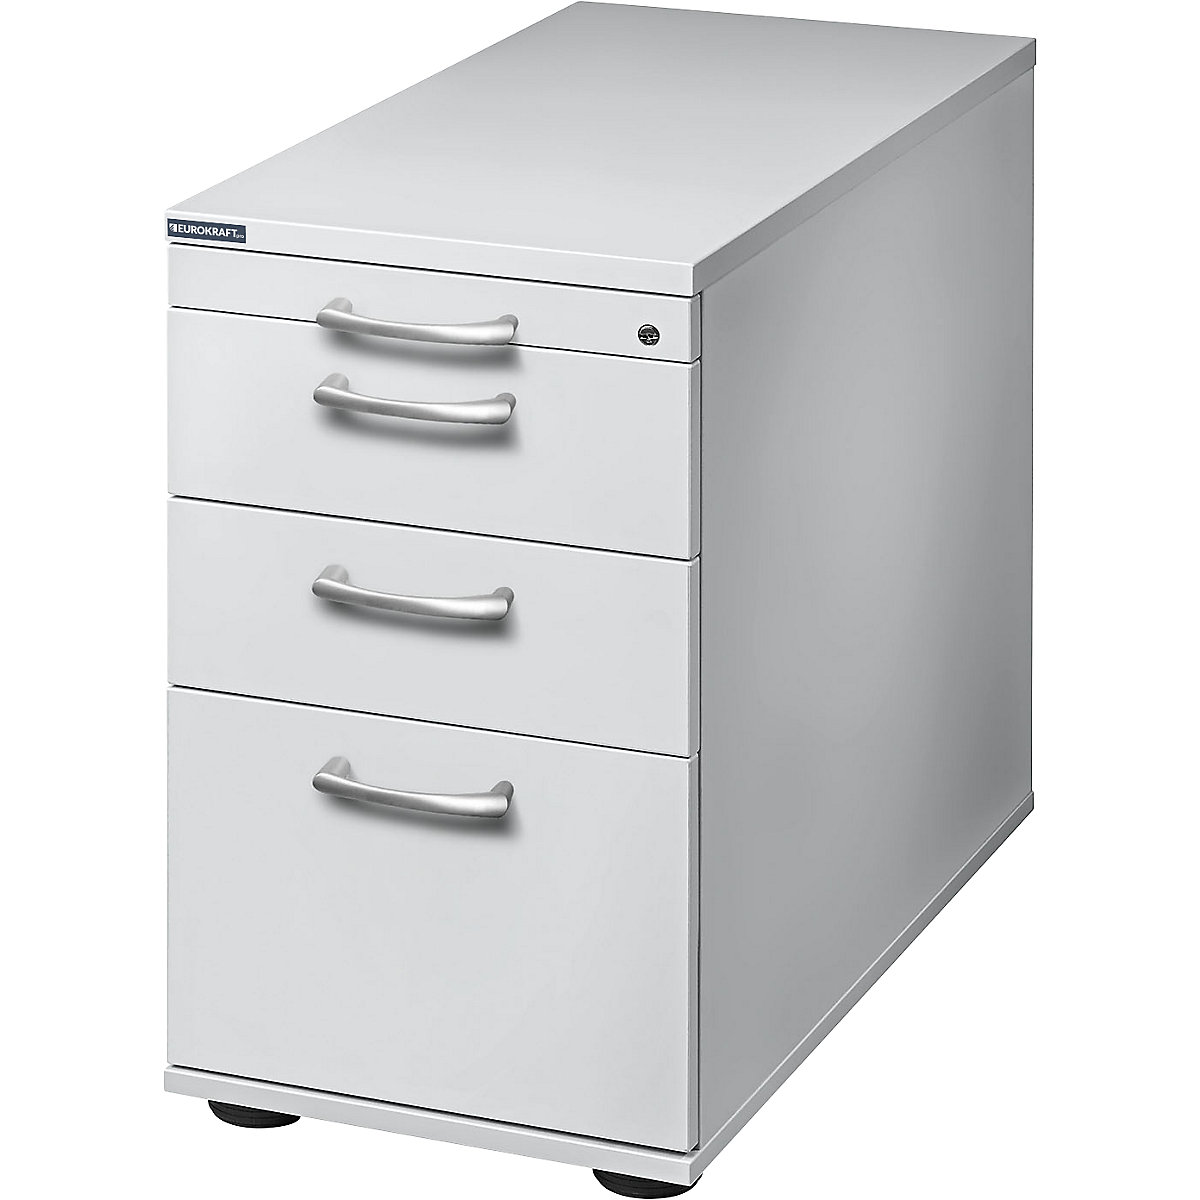 Fixed pedestal ANNY – eurokraft pro, 1 utensil drawer, 2 storage drawers, 1 filing drawer, light grey-9